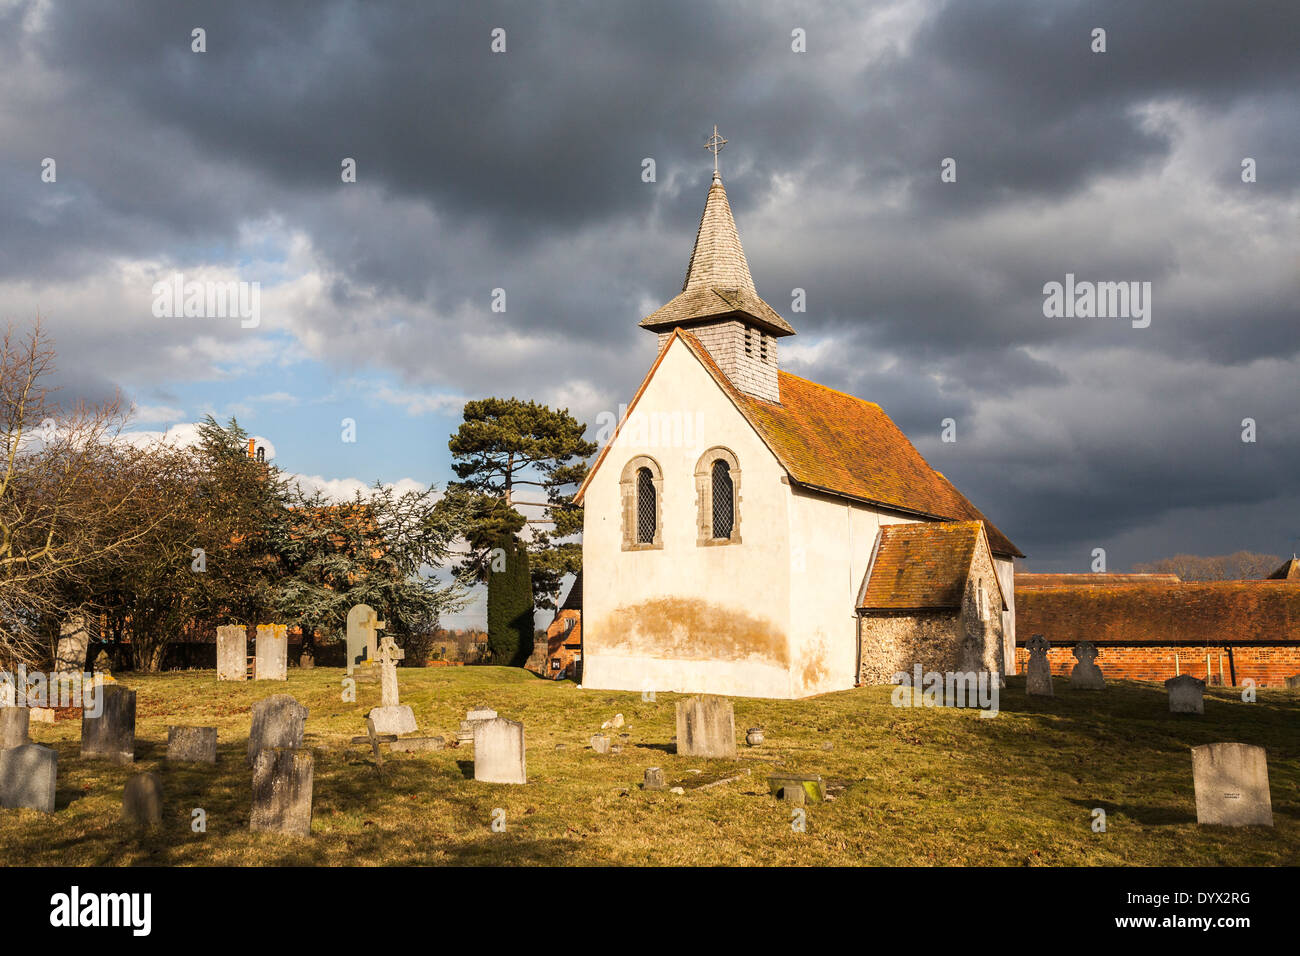 Norman/église médiévale à Wisley, Surrey, datant de 1150 avec le ciel et les nuages orageux Banque D'Images